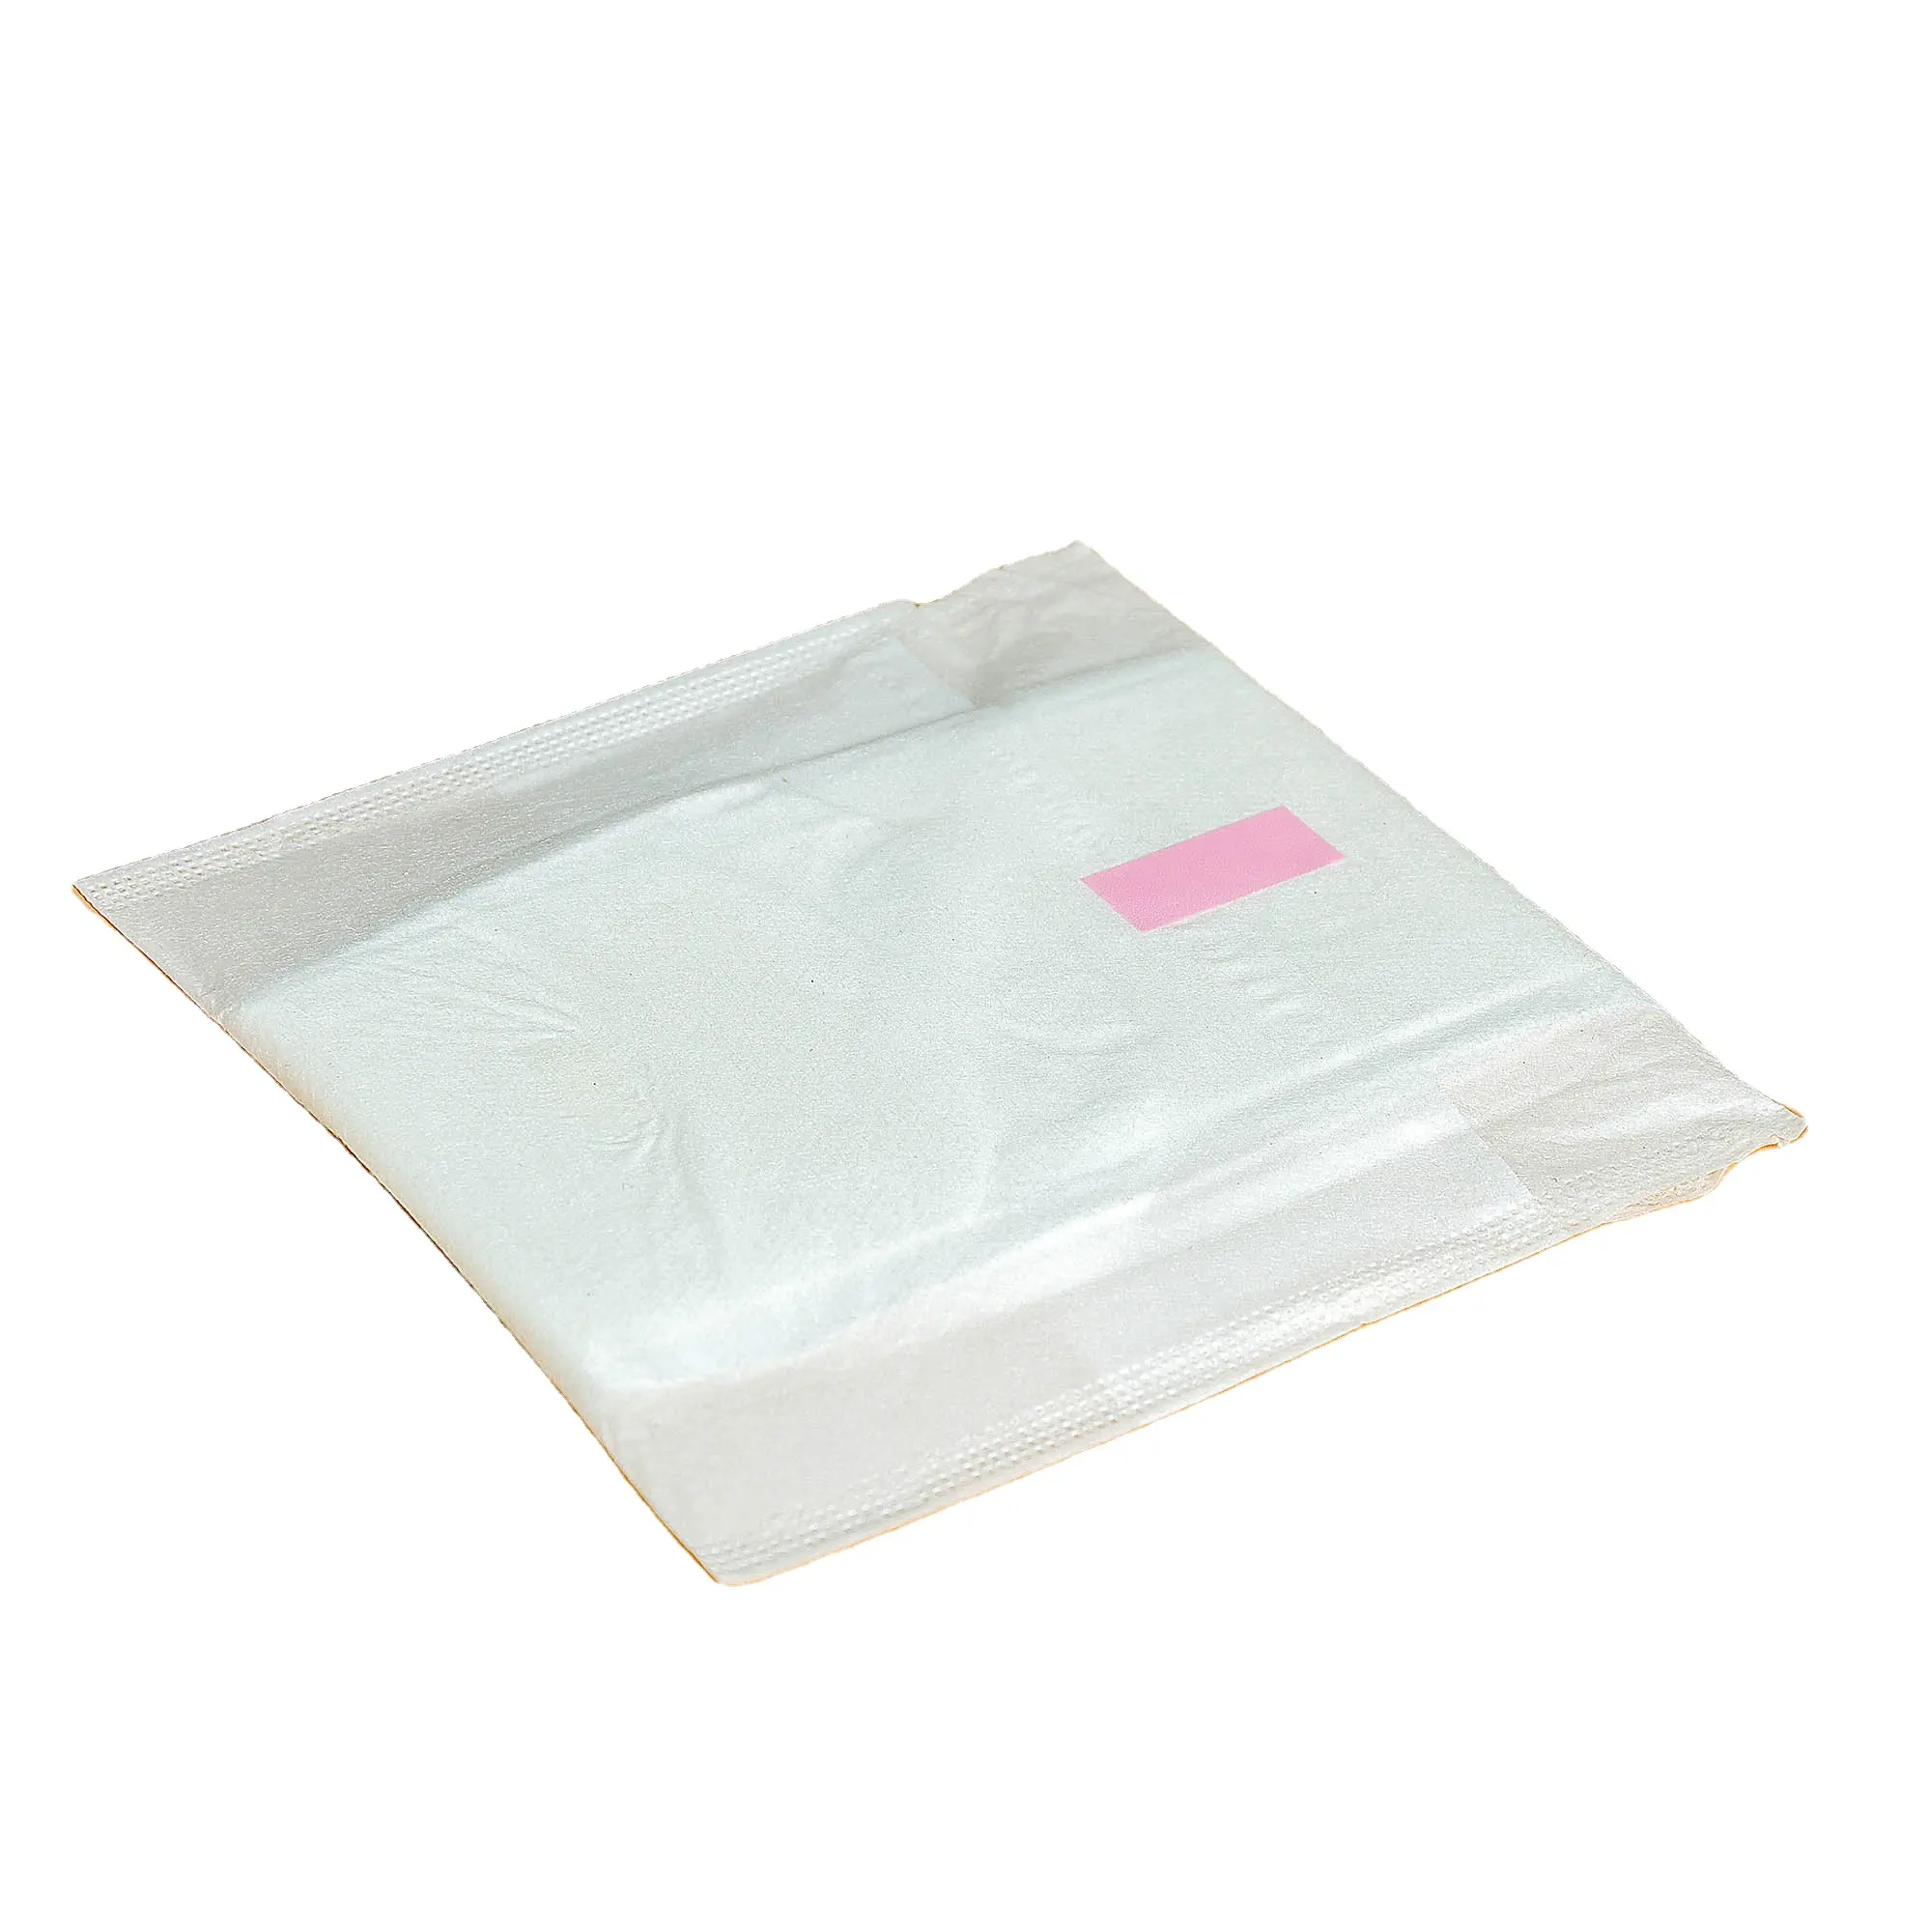 Descartável 420mm absorventes higiênicos super longa alta absorção algodão puro seguro respirável menstruação pad